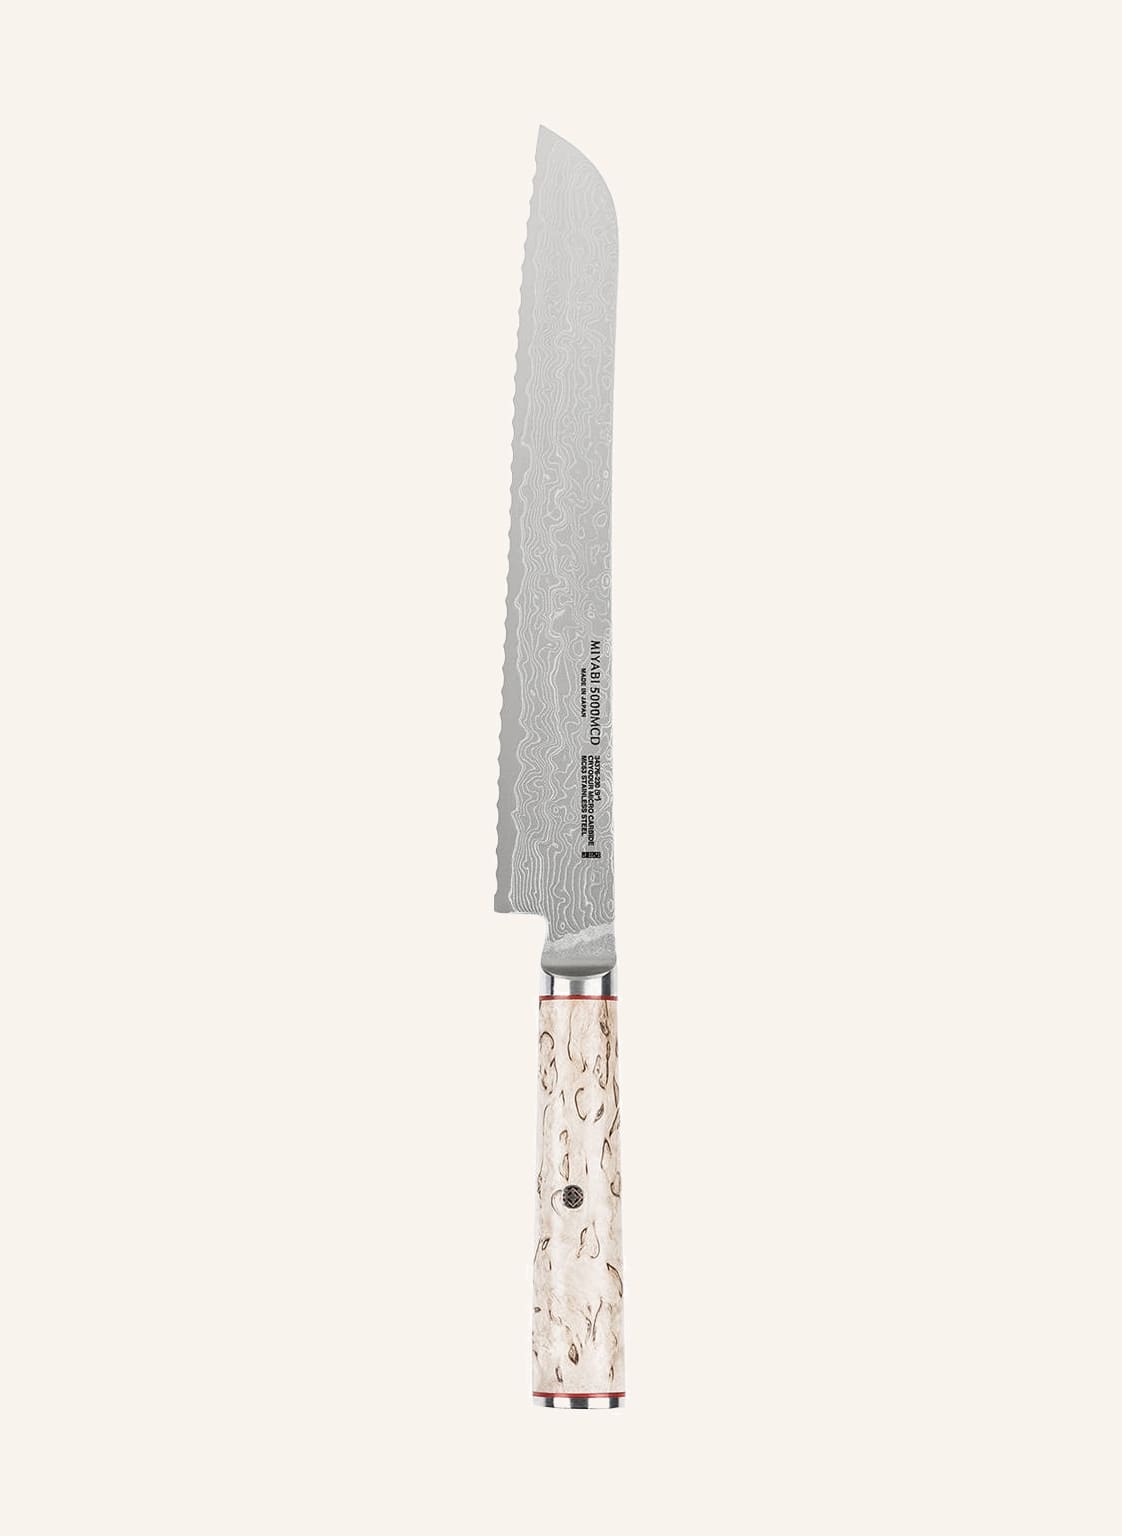 Zwilling Brotmesser Miyabi 5000mcd braun von ZWILLING